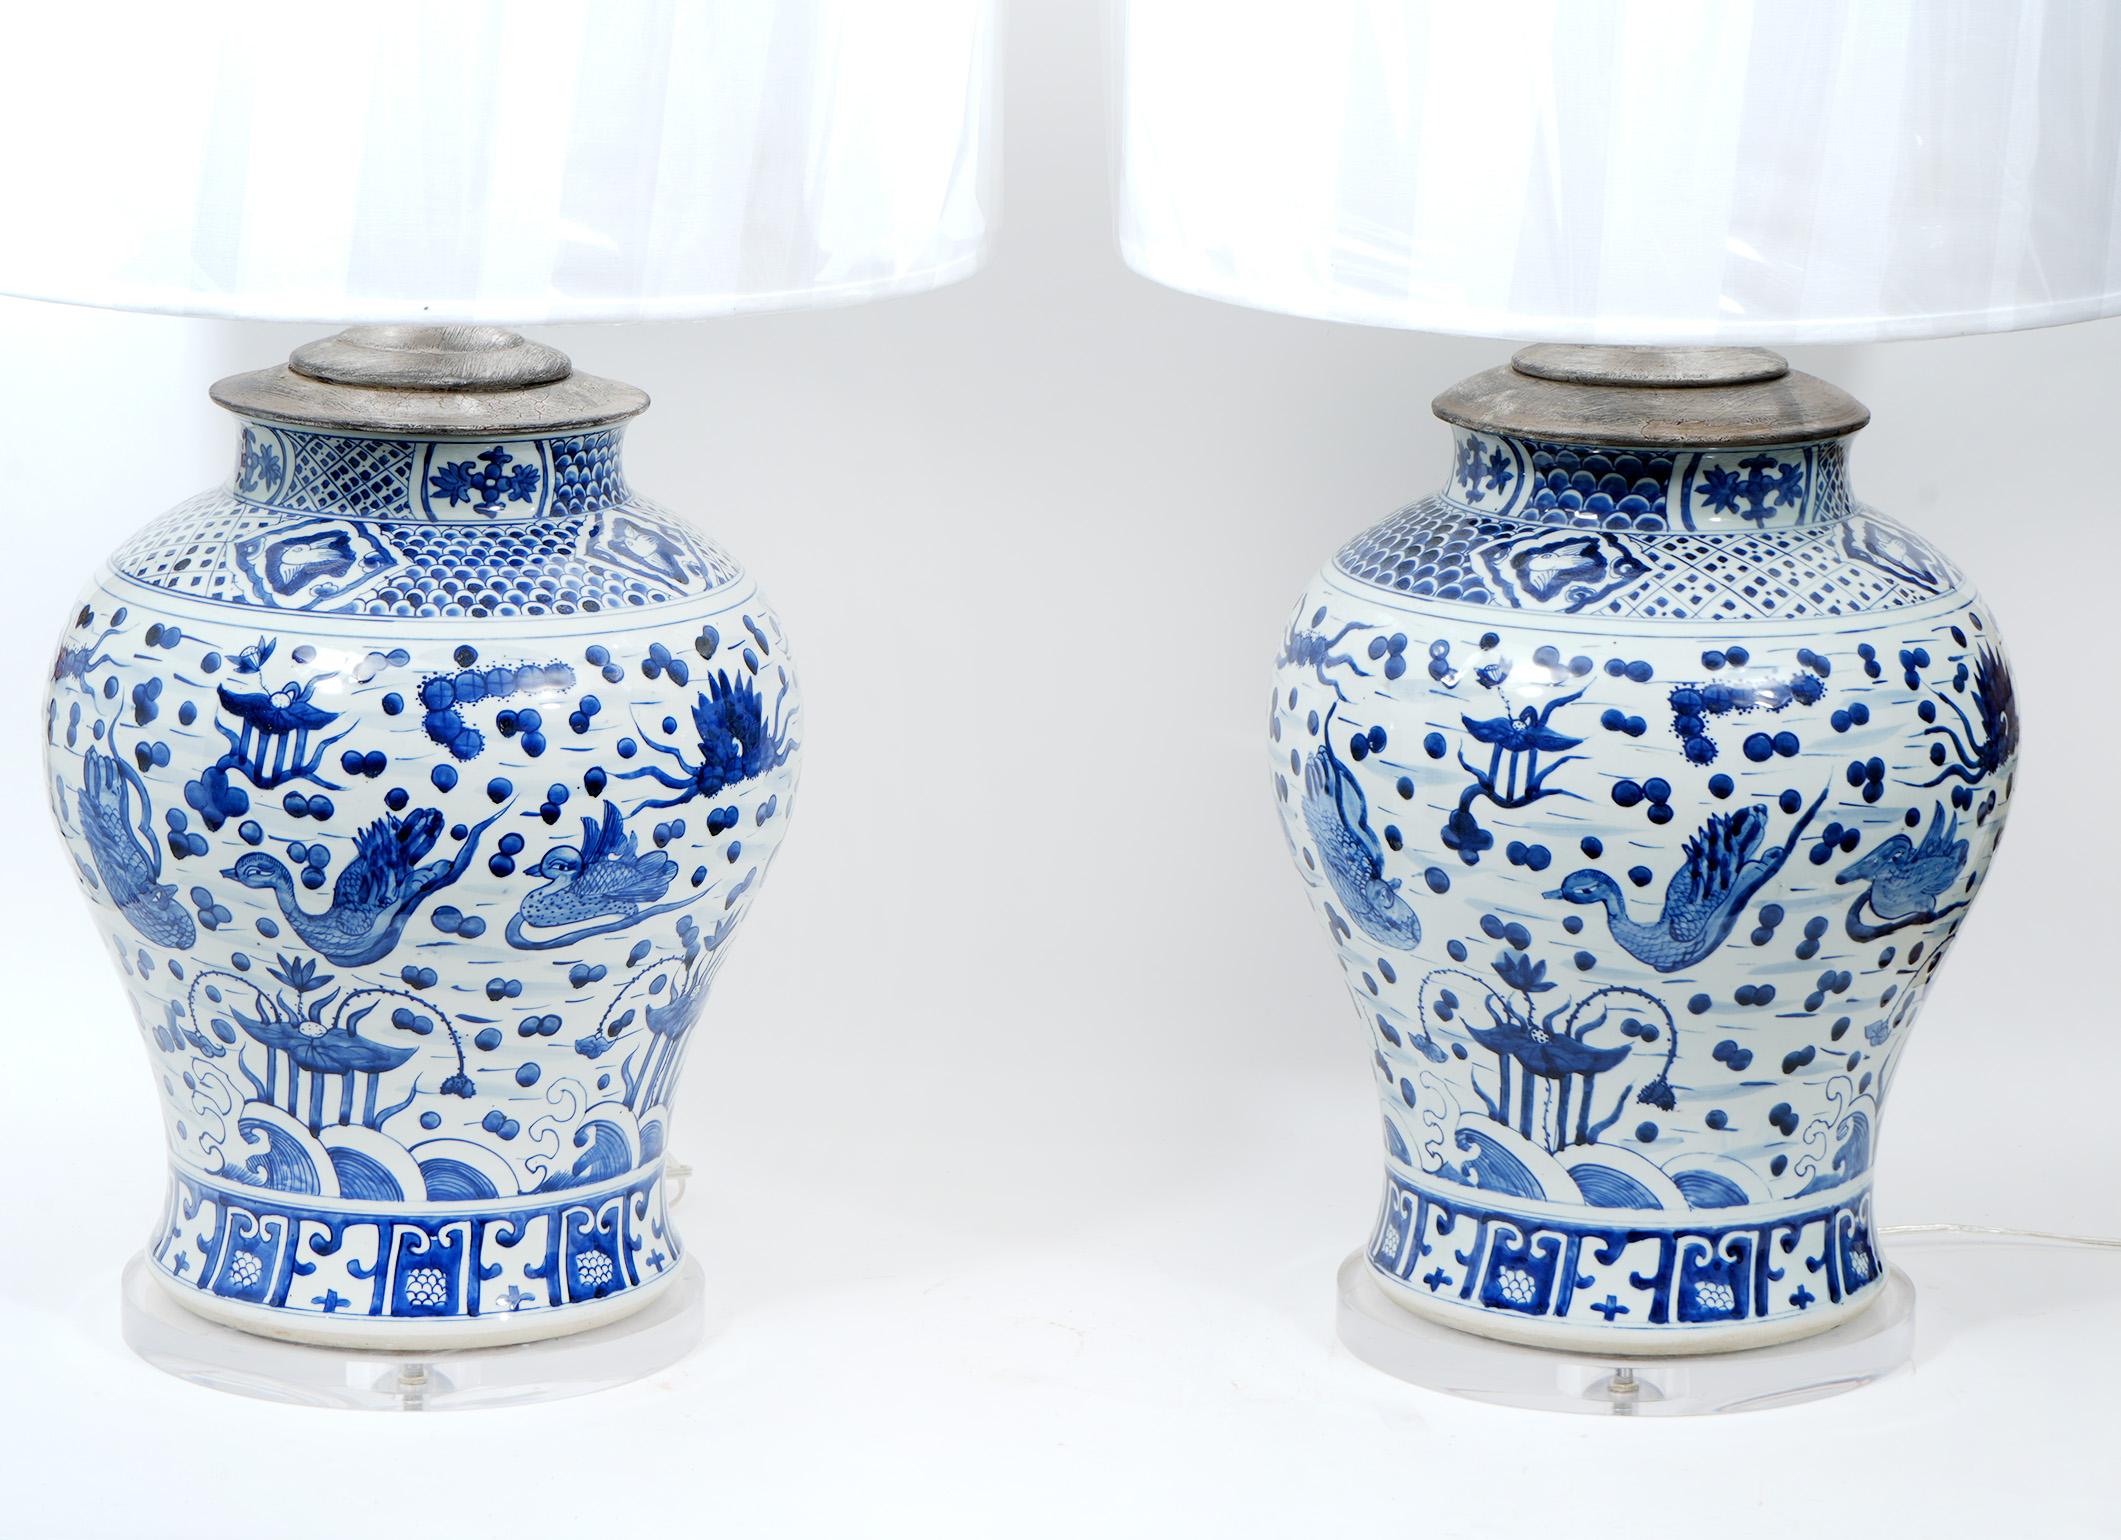 Grande paire de lampes en porcelaine chinoise bleu et blanc. Grands vases anciens montés et transformés en lampes.  Le câblage des lampes a été refait. Le Lucite est neuf. Les abat-jours sont inclus. Ensemble 38